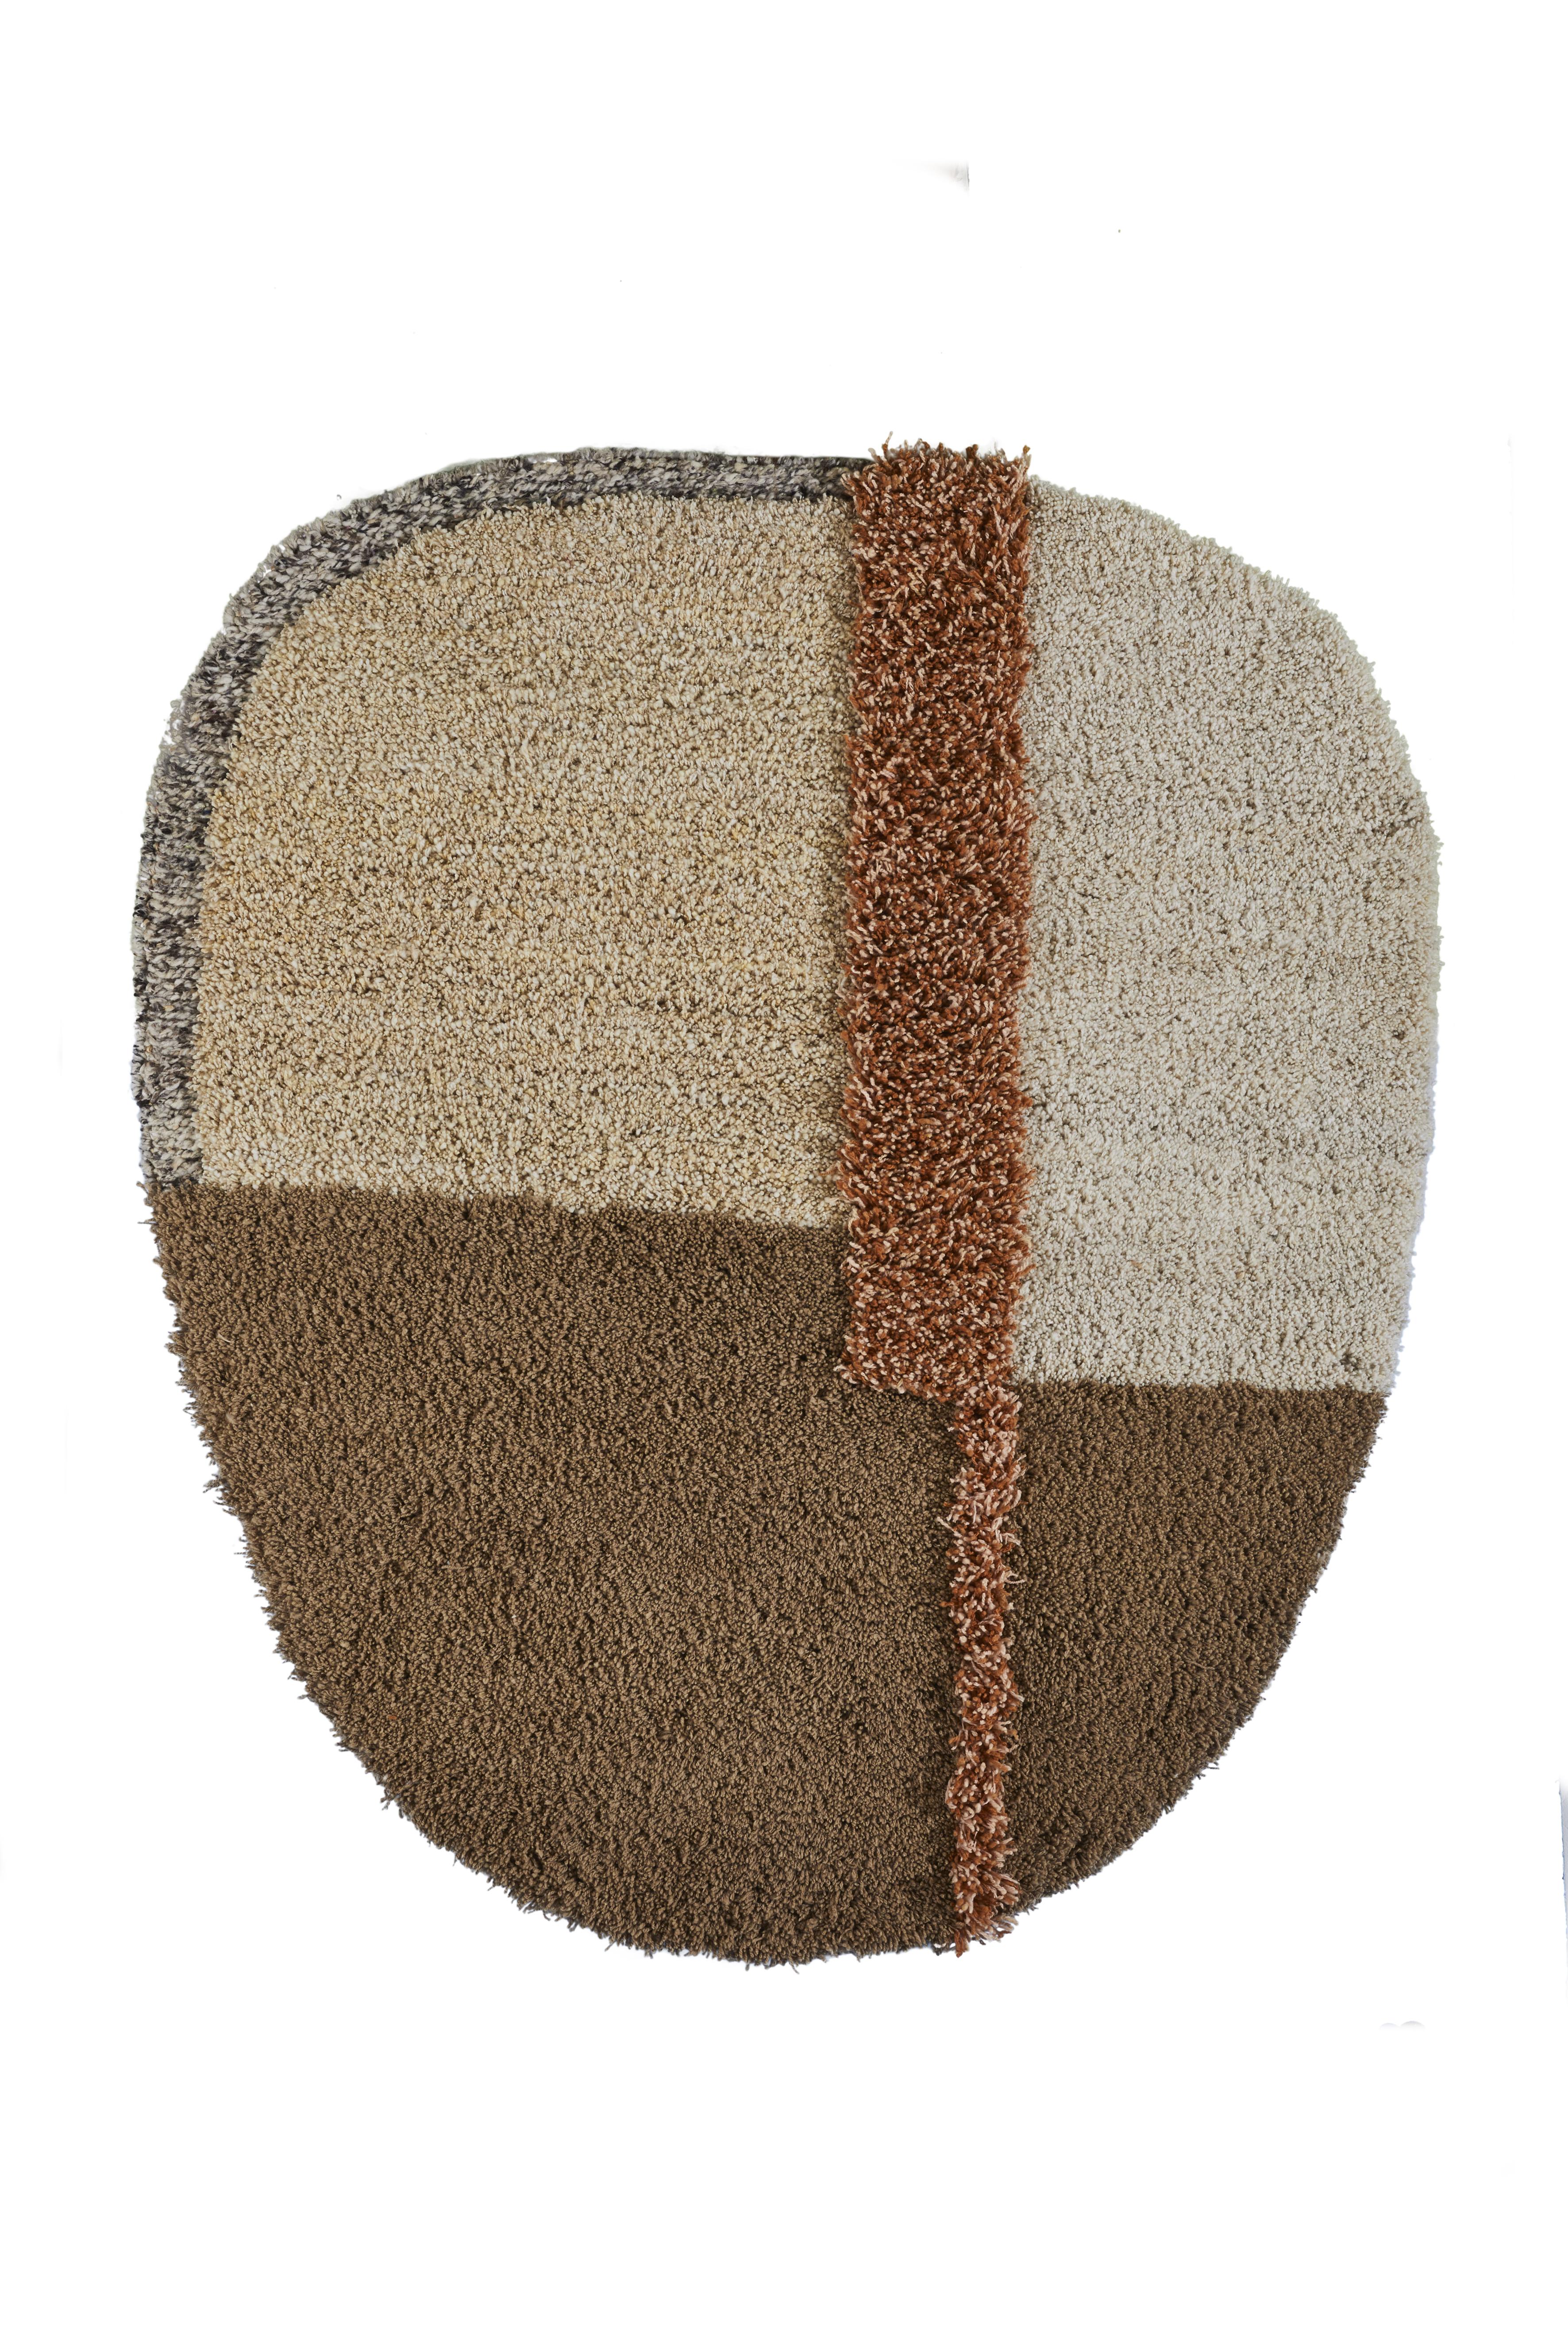 Petit tapis Nudo de Sebastian Herkner
Matériaux : 100% laine vierge naturelle. 
Technique : tissé à la main en Colombie.
Dimensions : L 160 x L 190 cm 
Disponible en couleurs : blanc/ beige/ rose, gris/ vert/ noir, bleu/ orange/ ocre, brun/